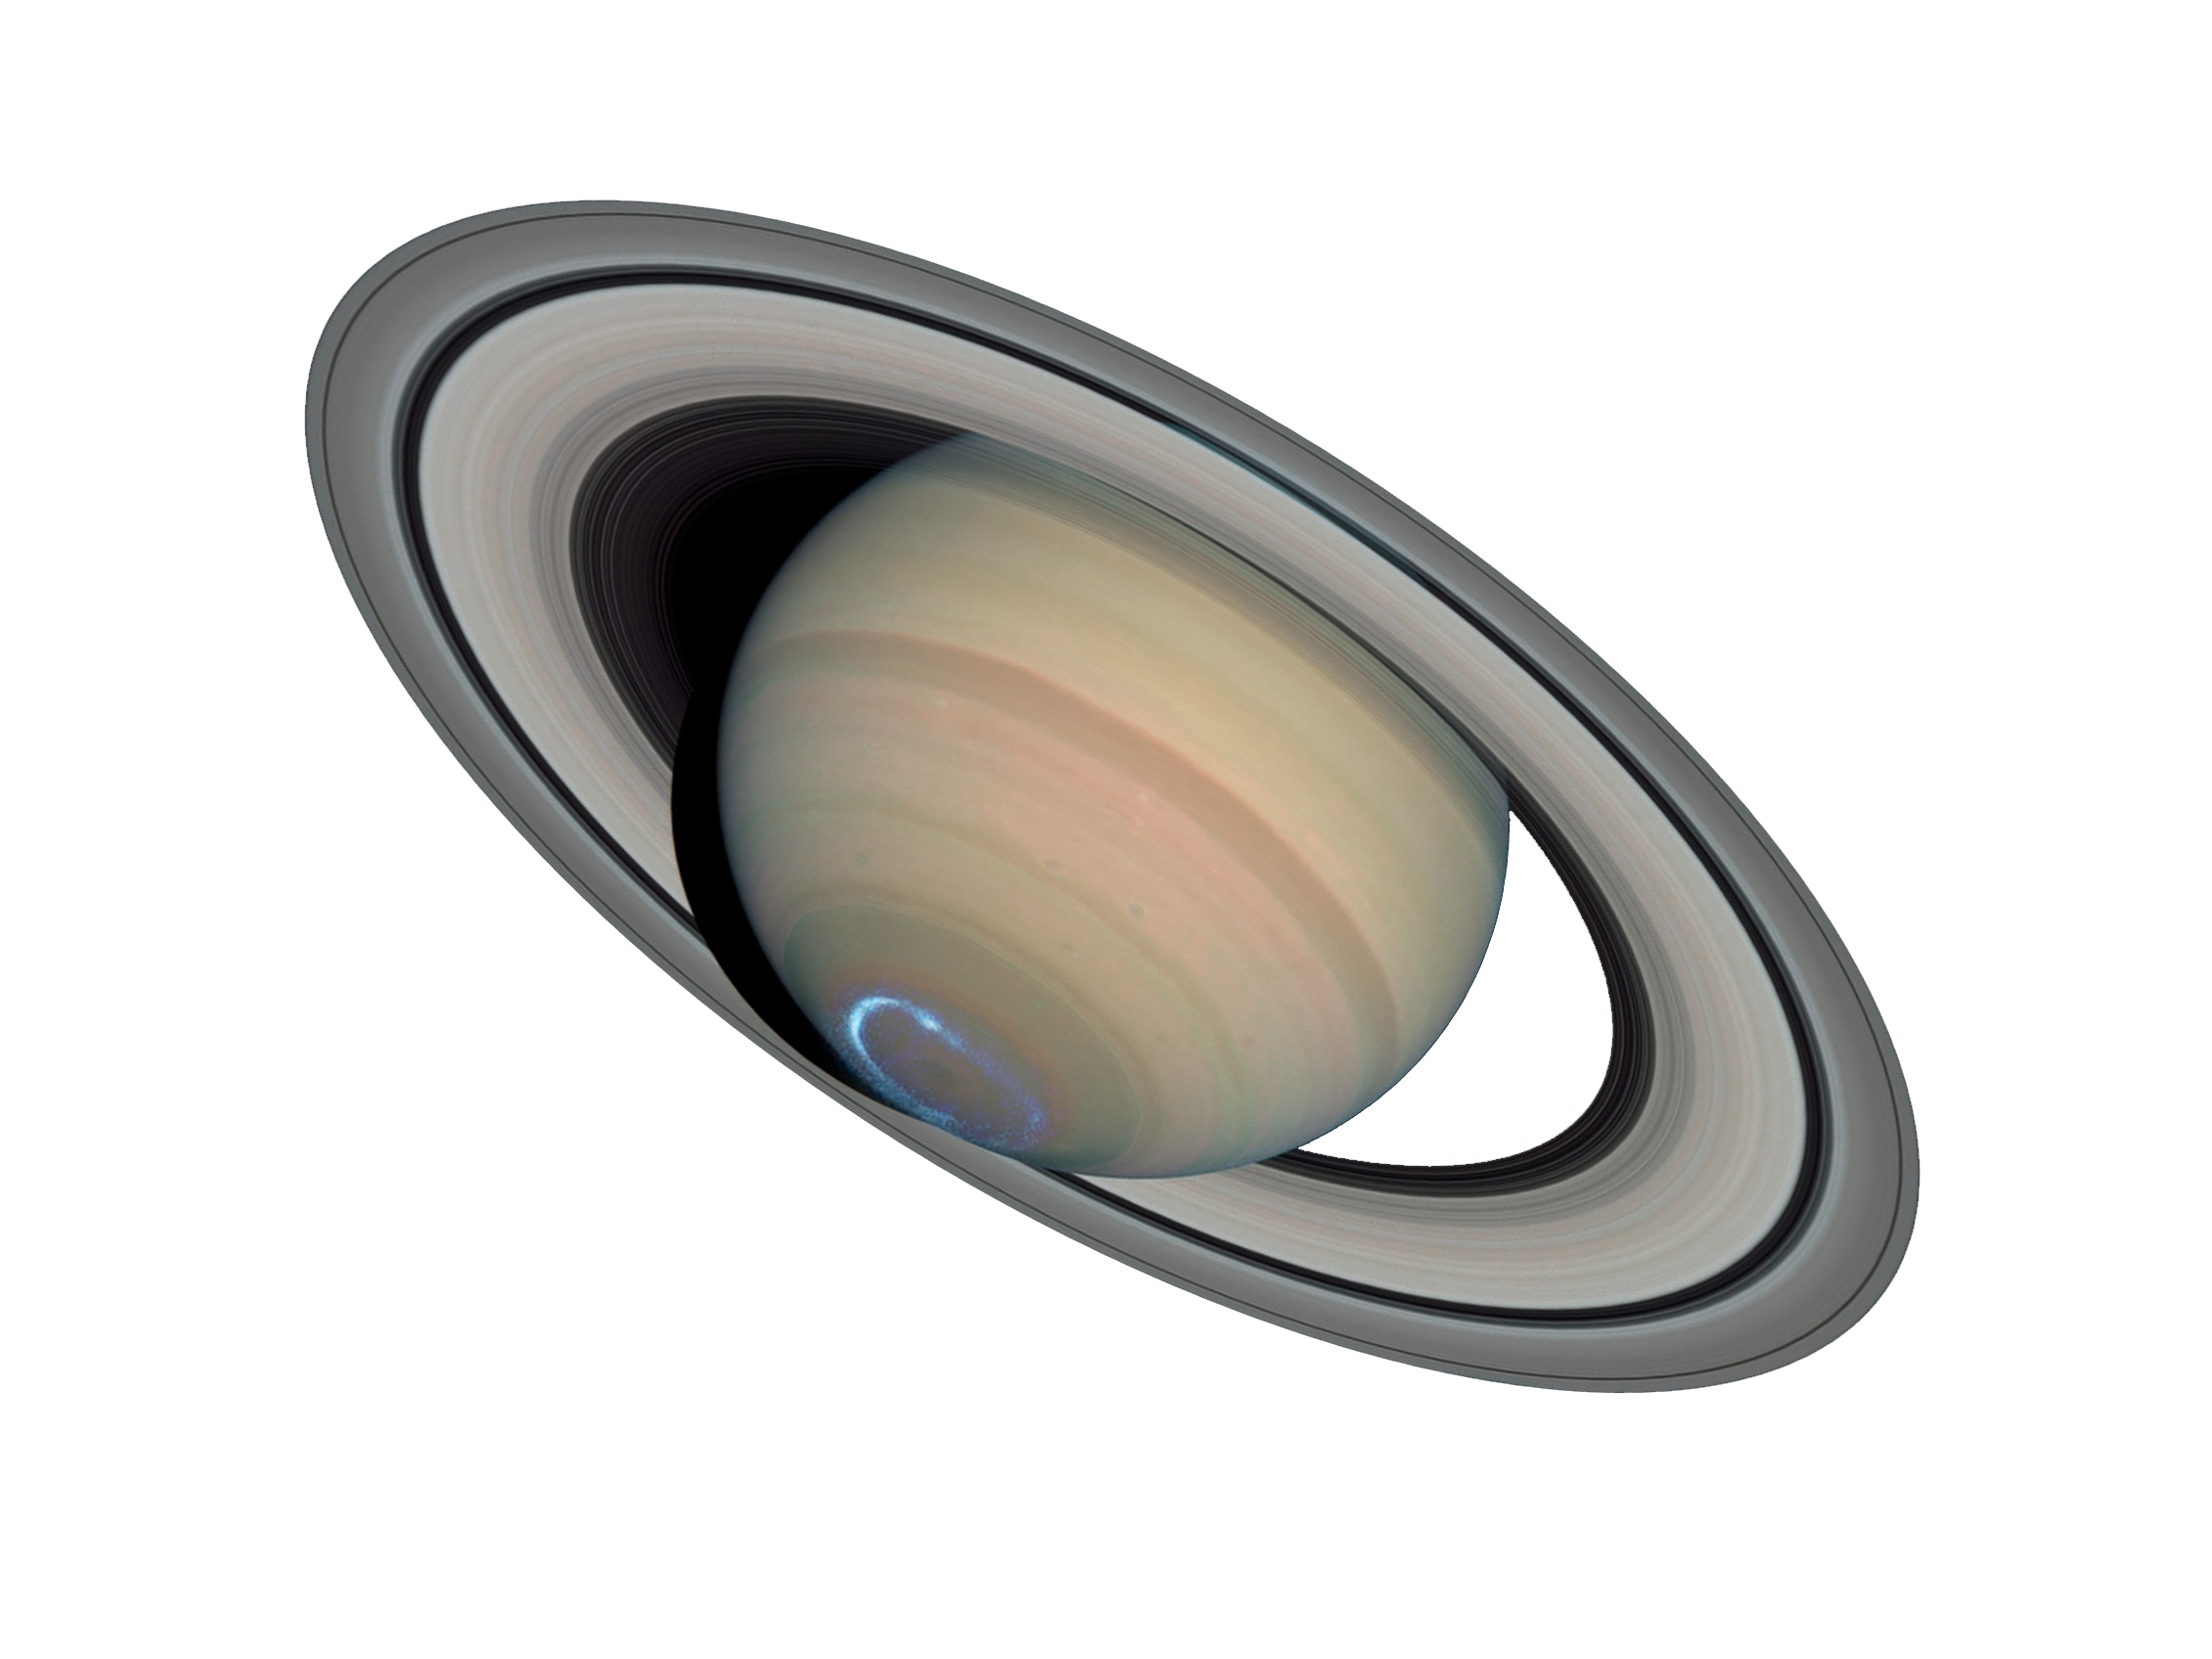 Saturn on emaze